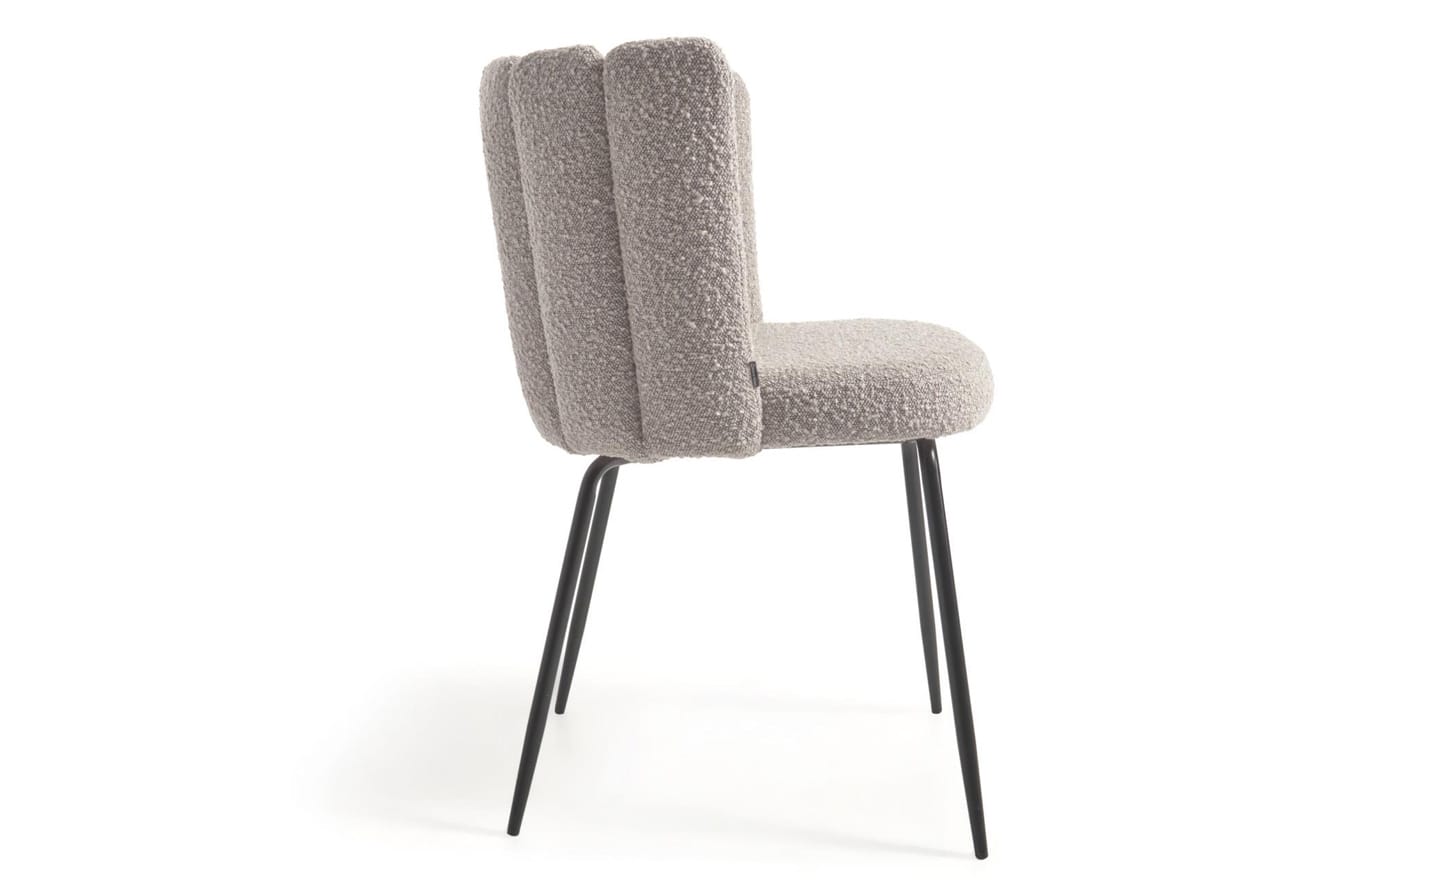 Cadeira Aniela Cinza Claro, estofada com tecido de efeito borrego cinza claro. Design envolvente para espaços de refeição elegantes.